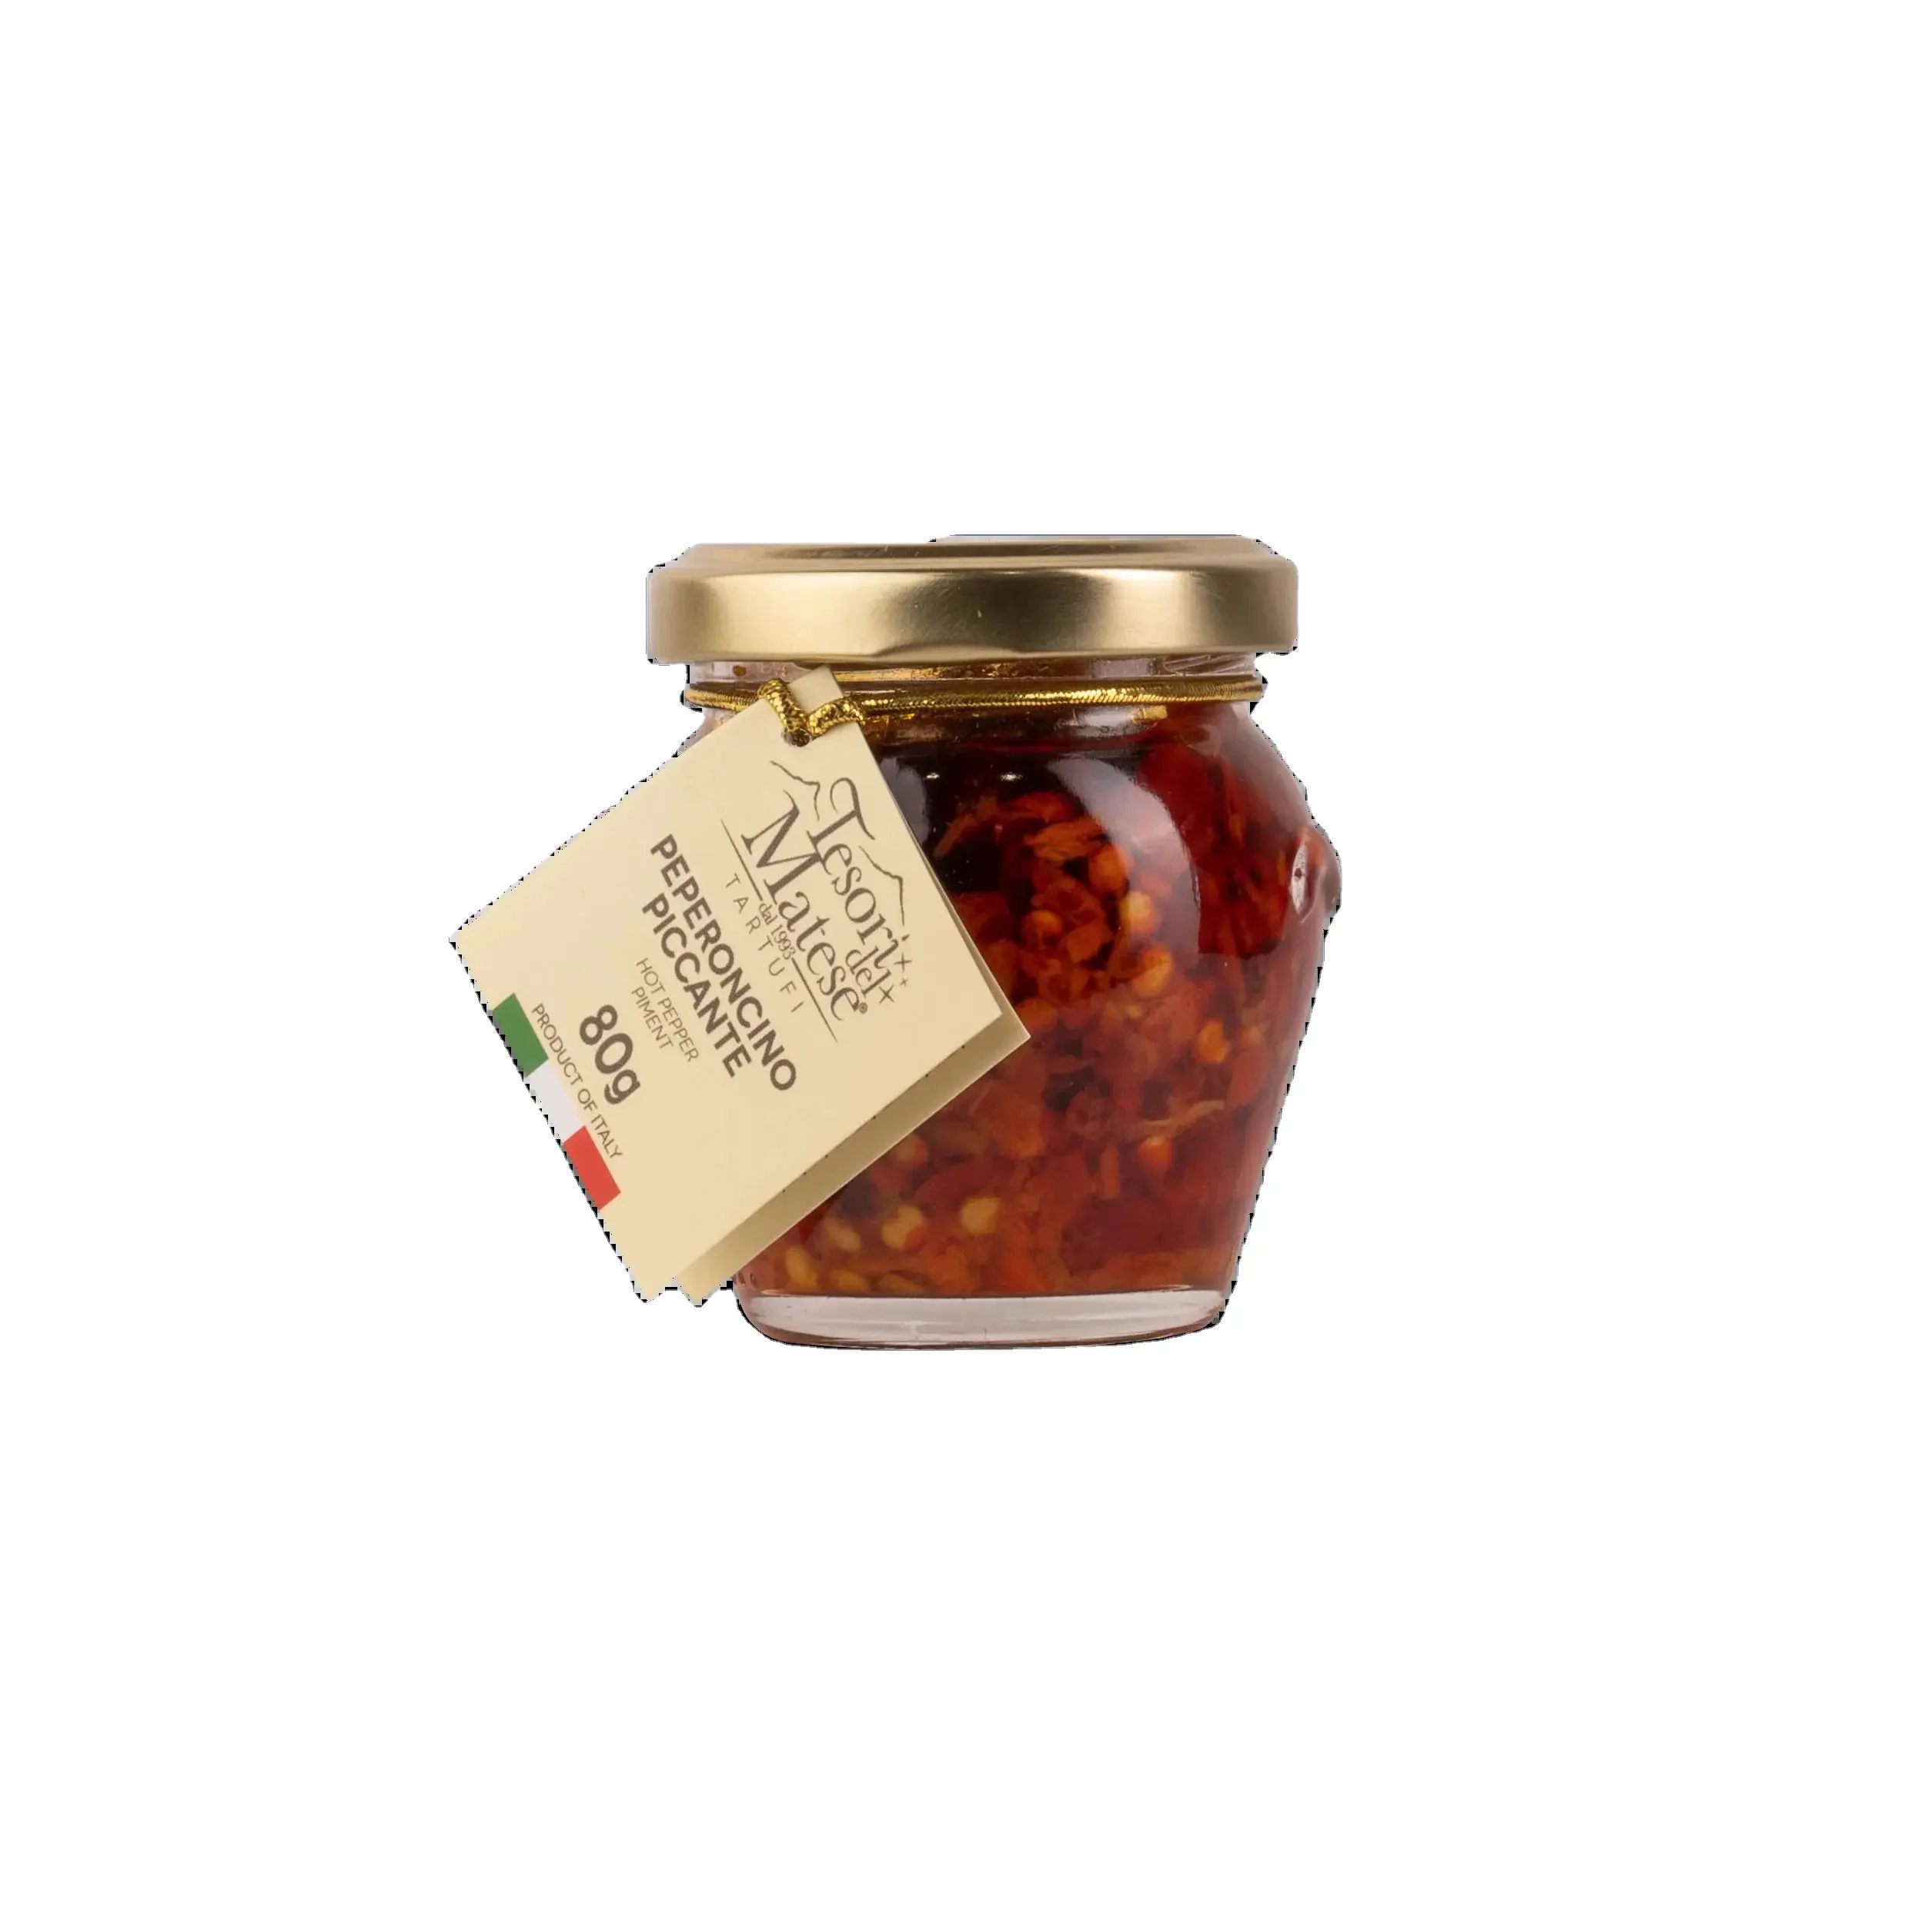 Premium qualità italiana origine fresca peperoncino piccante 80g intenso sapore di vetro vasetto di imballaggio perfetto per l'esportazione e il commercio all'ingrosso